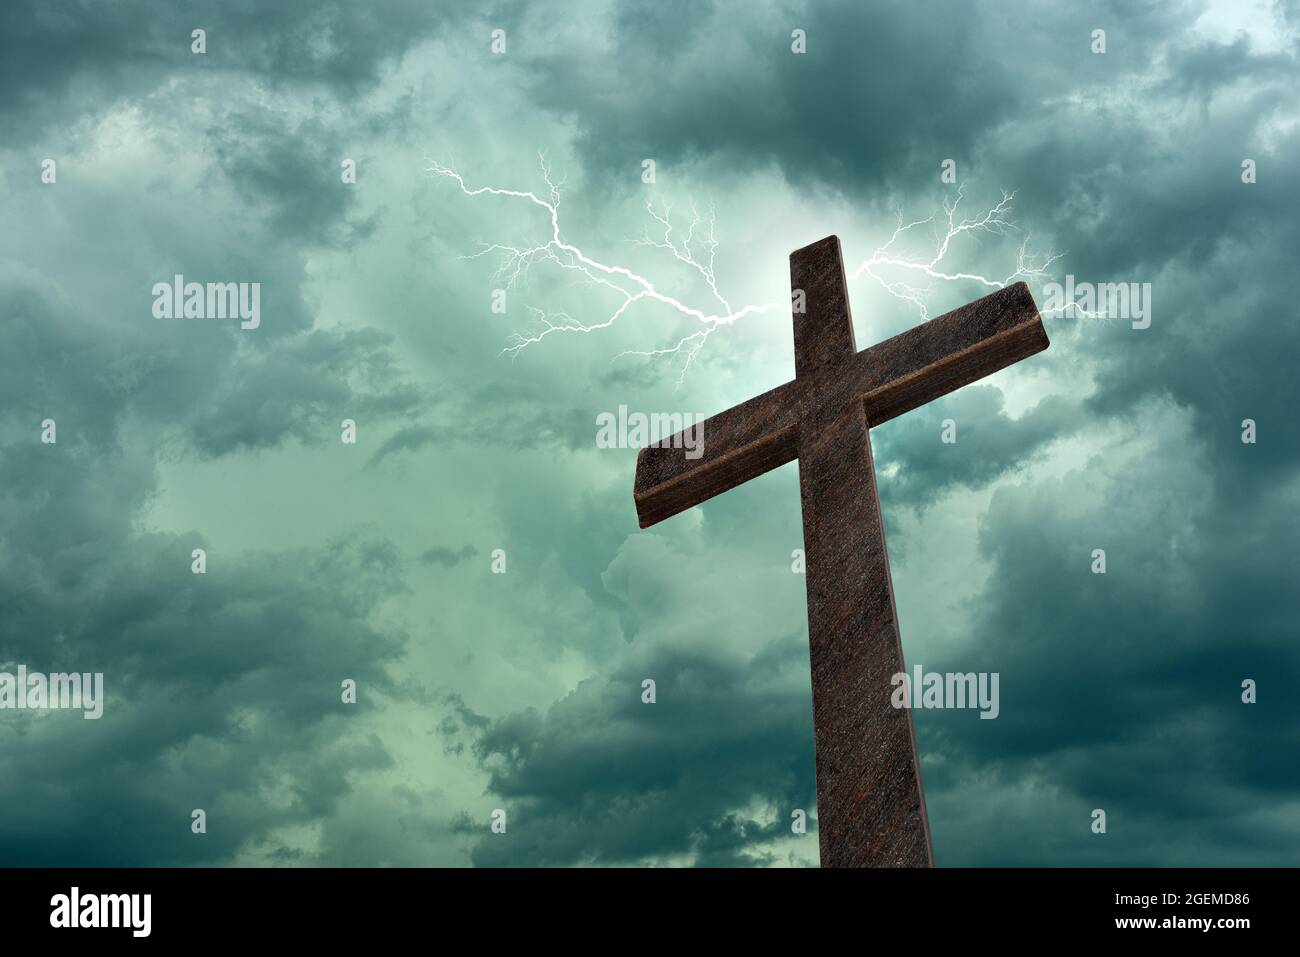 Immagine drammatica che mostra una croce religiosa della chiesa incorniciata contro un cielo di fulmini, luce luminosa e raggi solari, che mostra la venuta del Signore. Copia sp Foto Stock